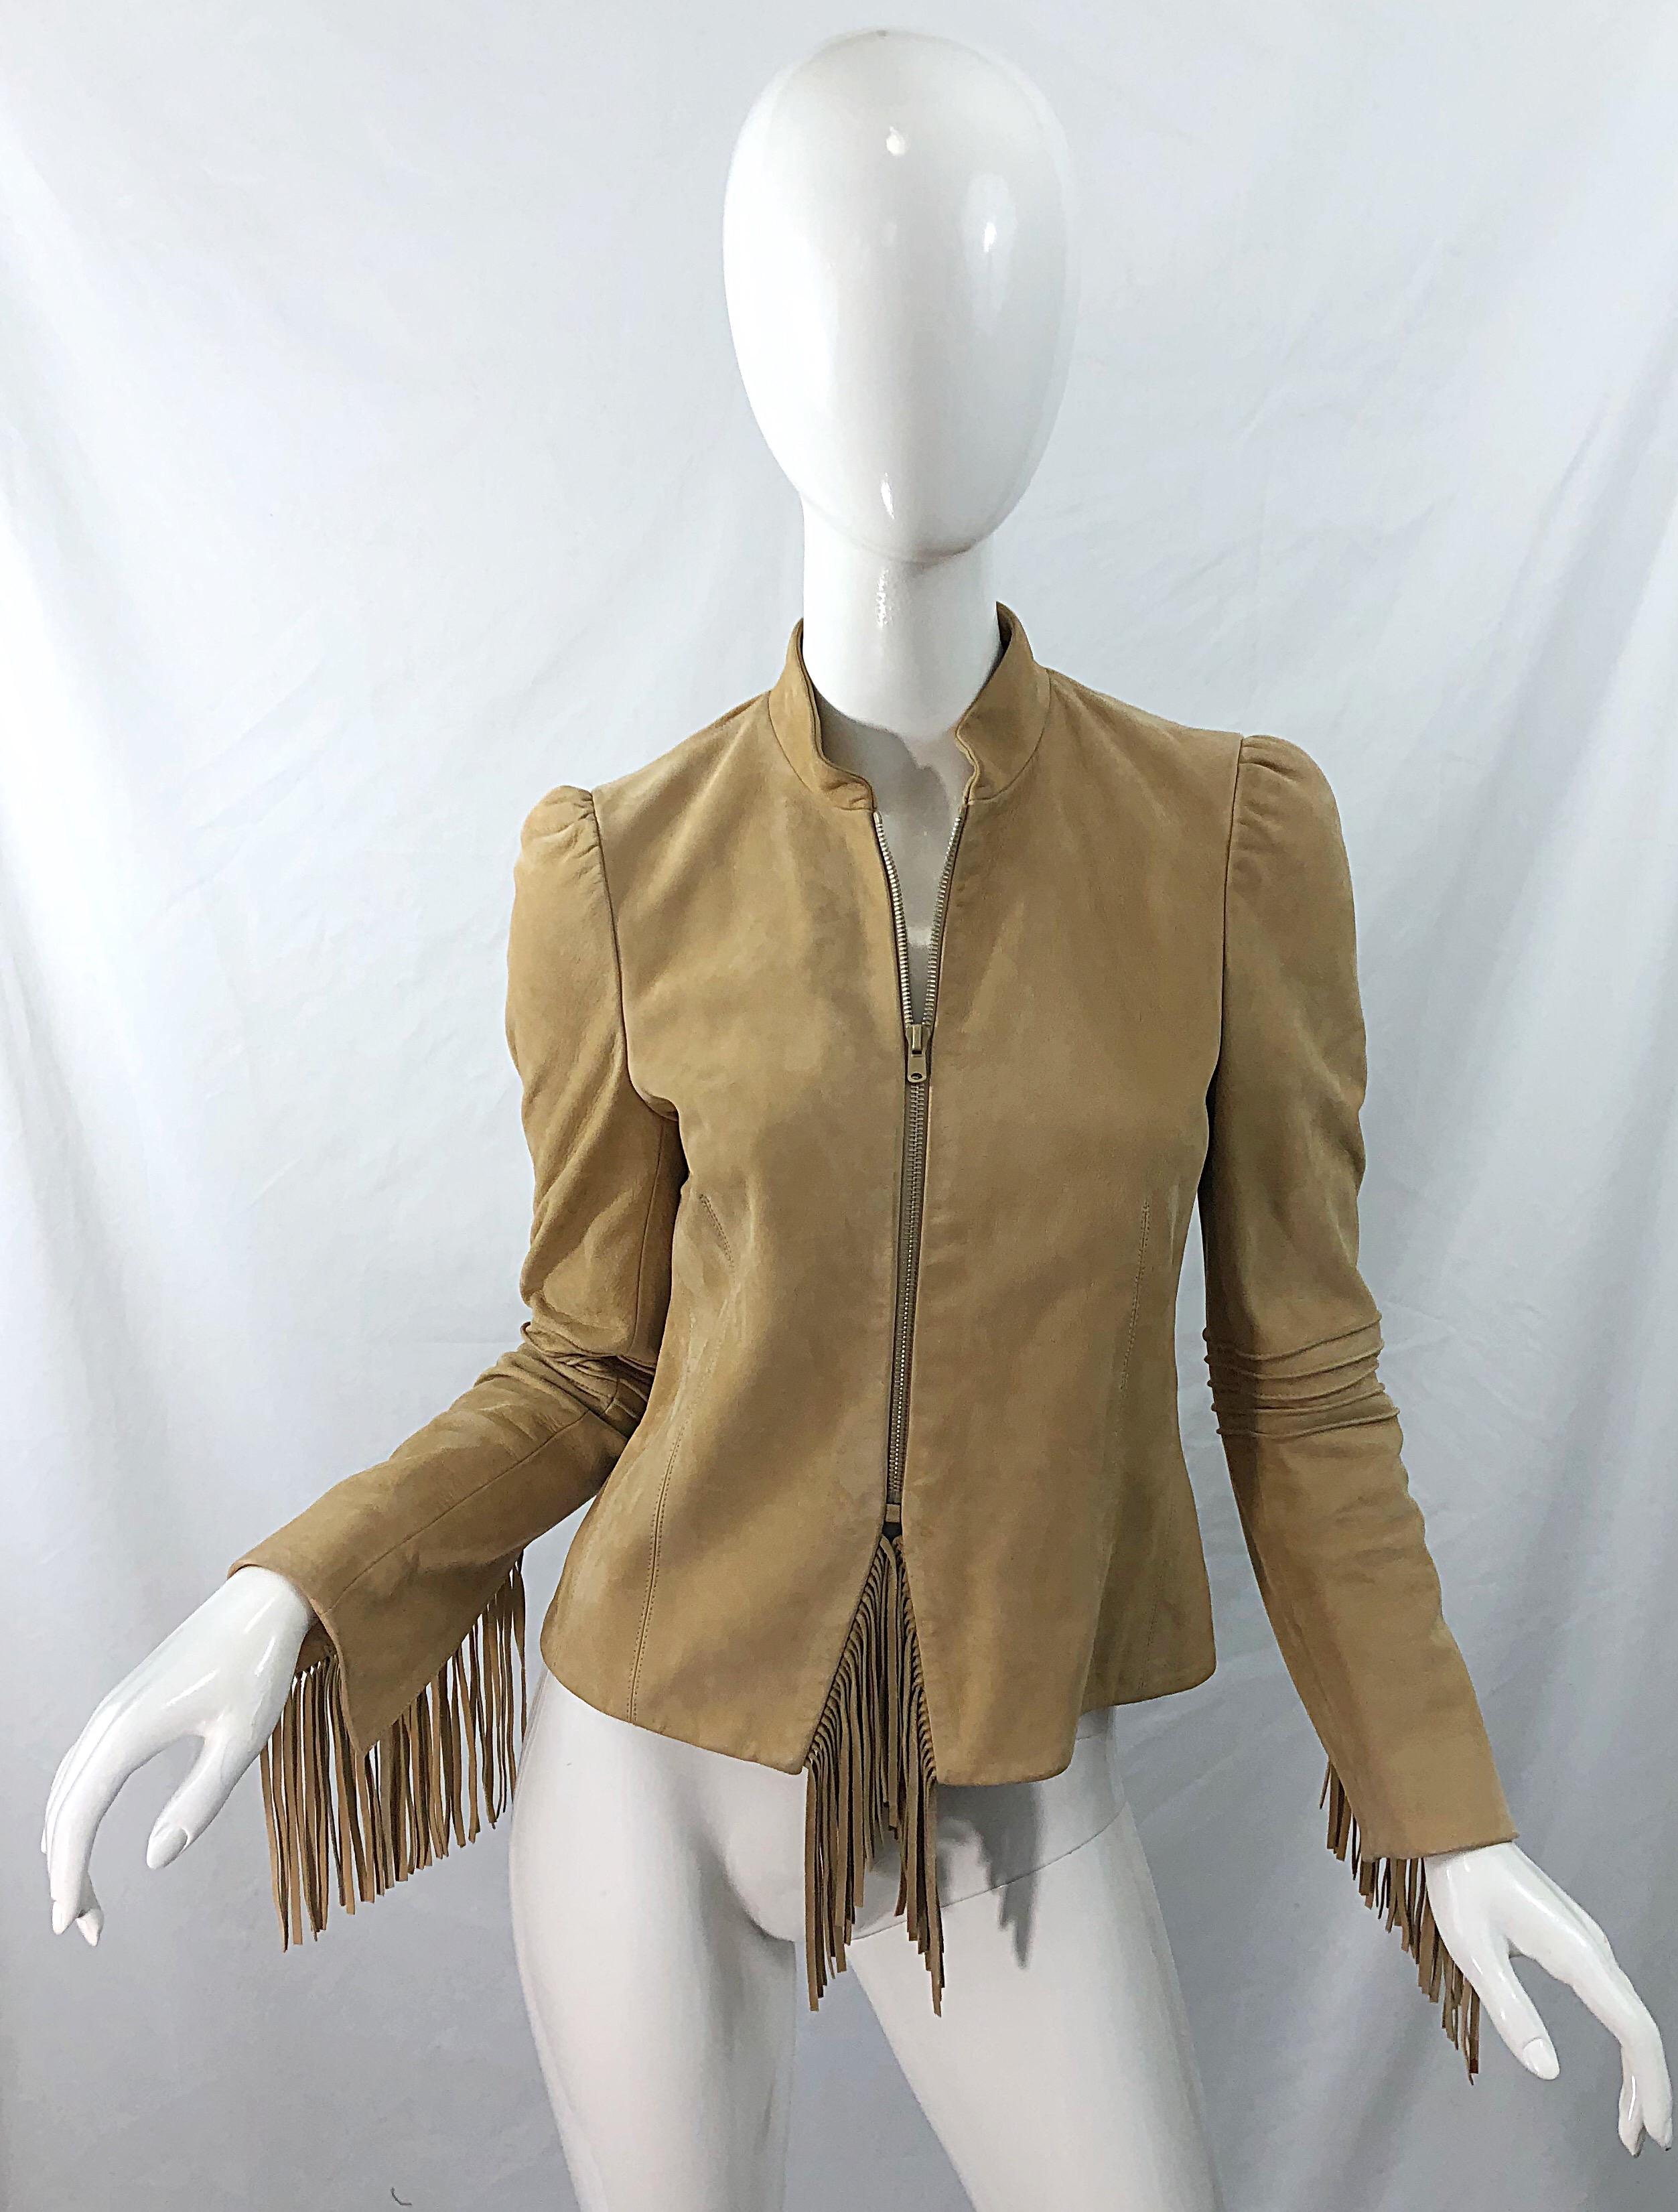 Katayone Adeli 1990s Tan Nubuck Leather Size 4 Fringe Vintage 90s Jacket 7